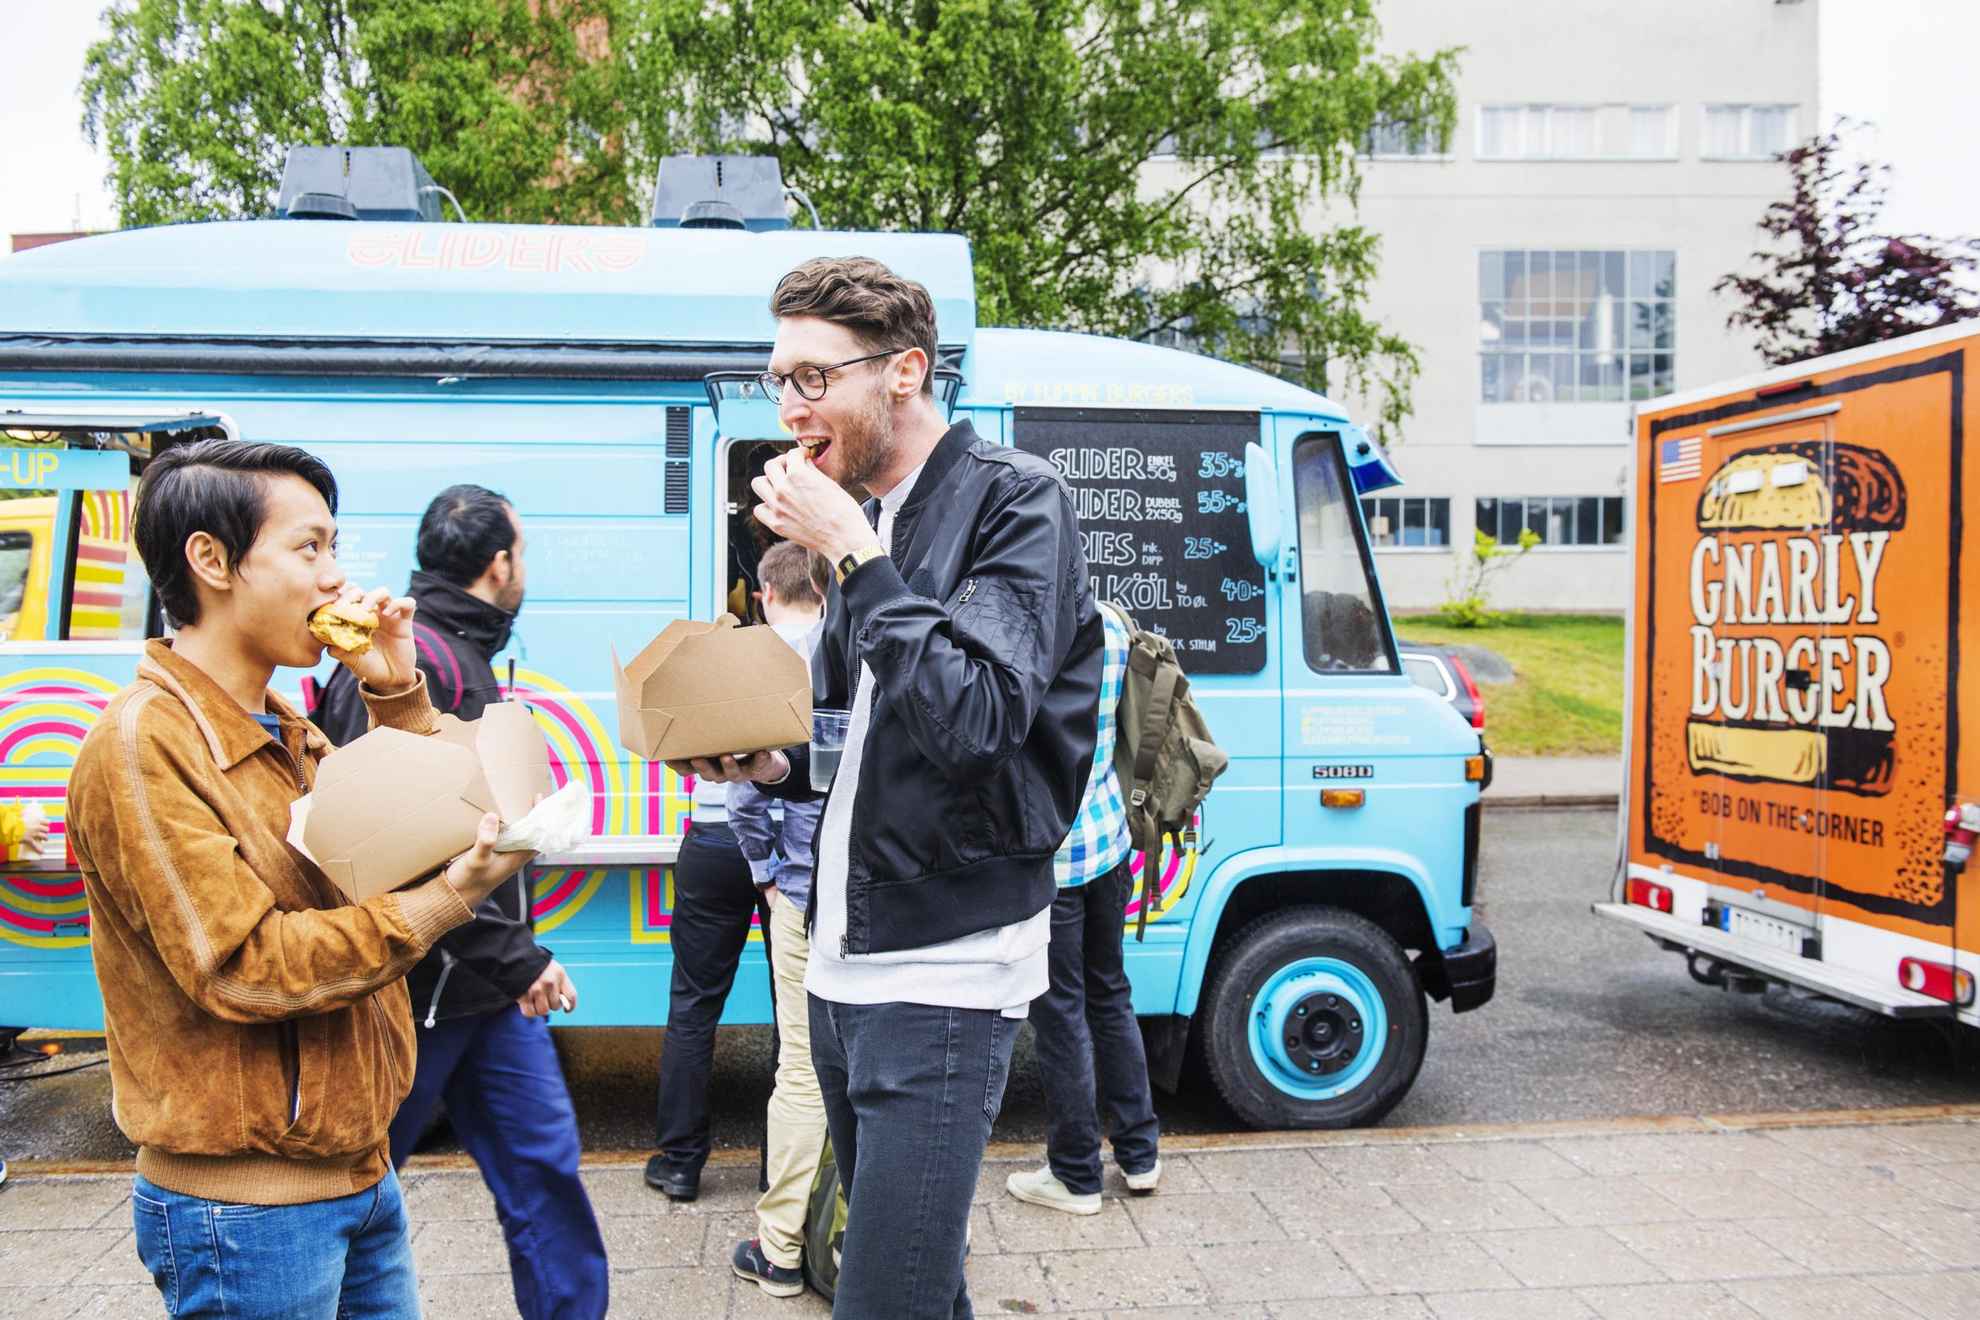 Des personnes mangent avec les mains de la nourriture dans de petites boîtes en carton à côté d'un food truck à Stockholm.